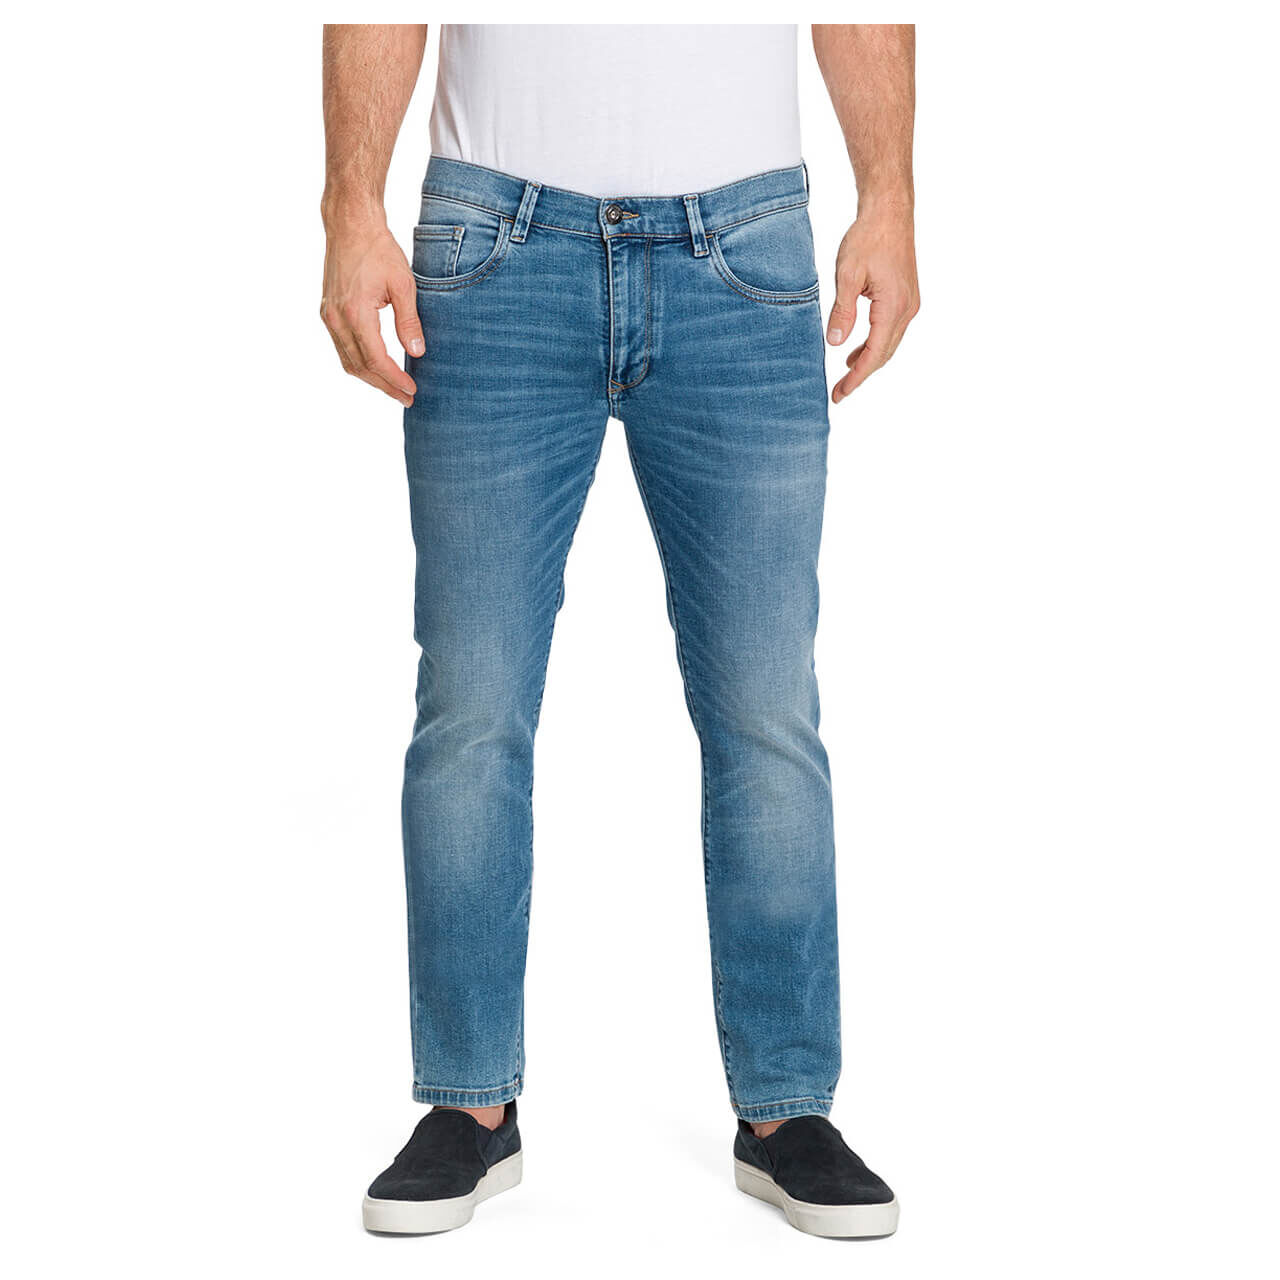 Pioneer Jeans Eric Megaflex für Herren in Mittelblau angewaschen, FarbNr.: 6825